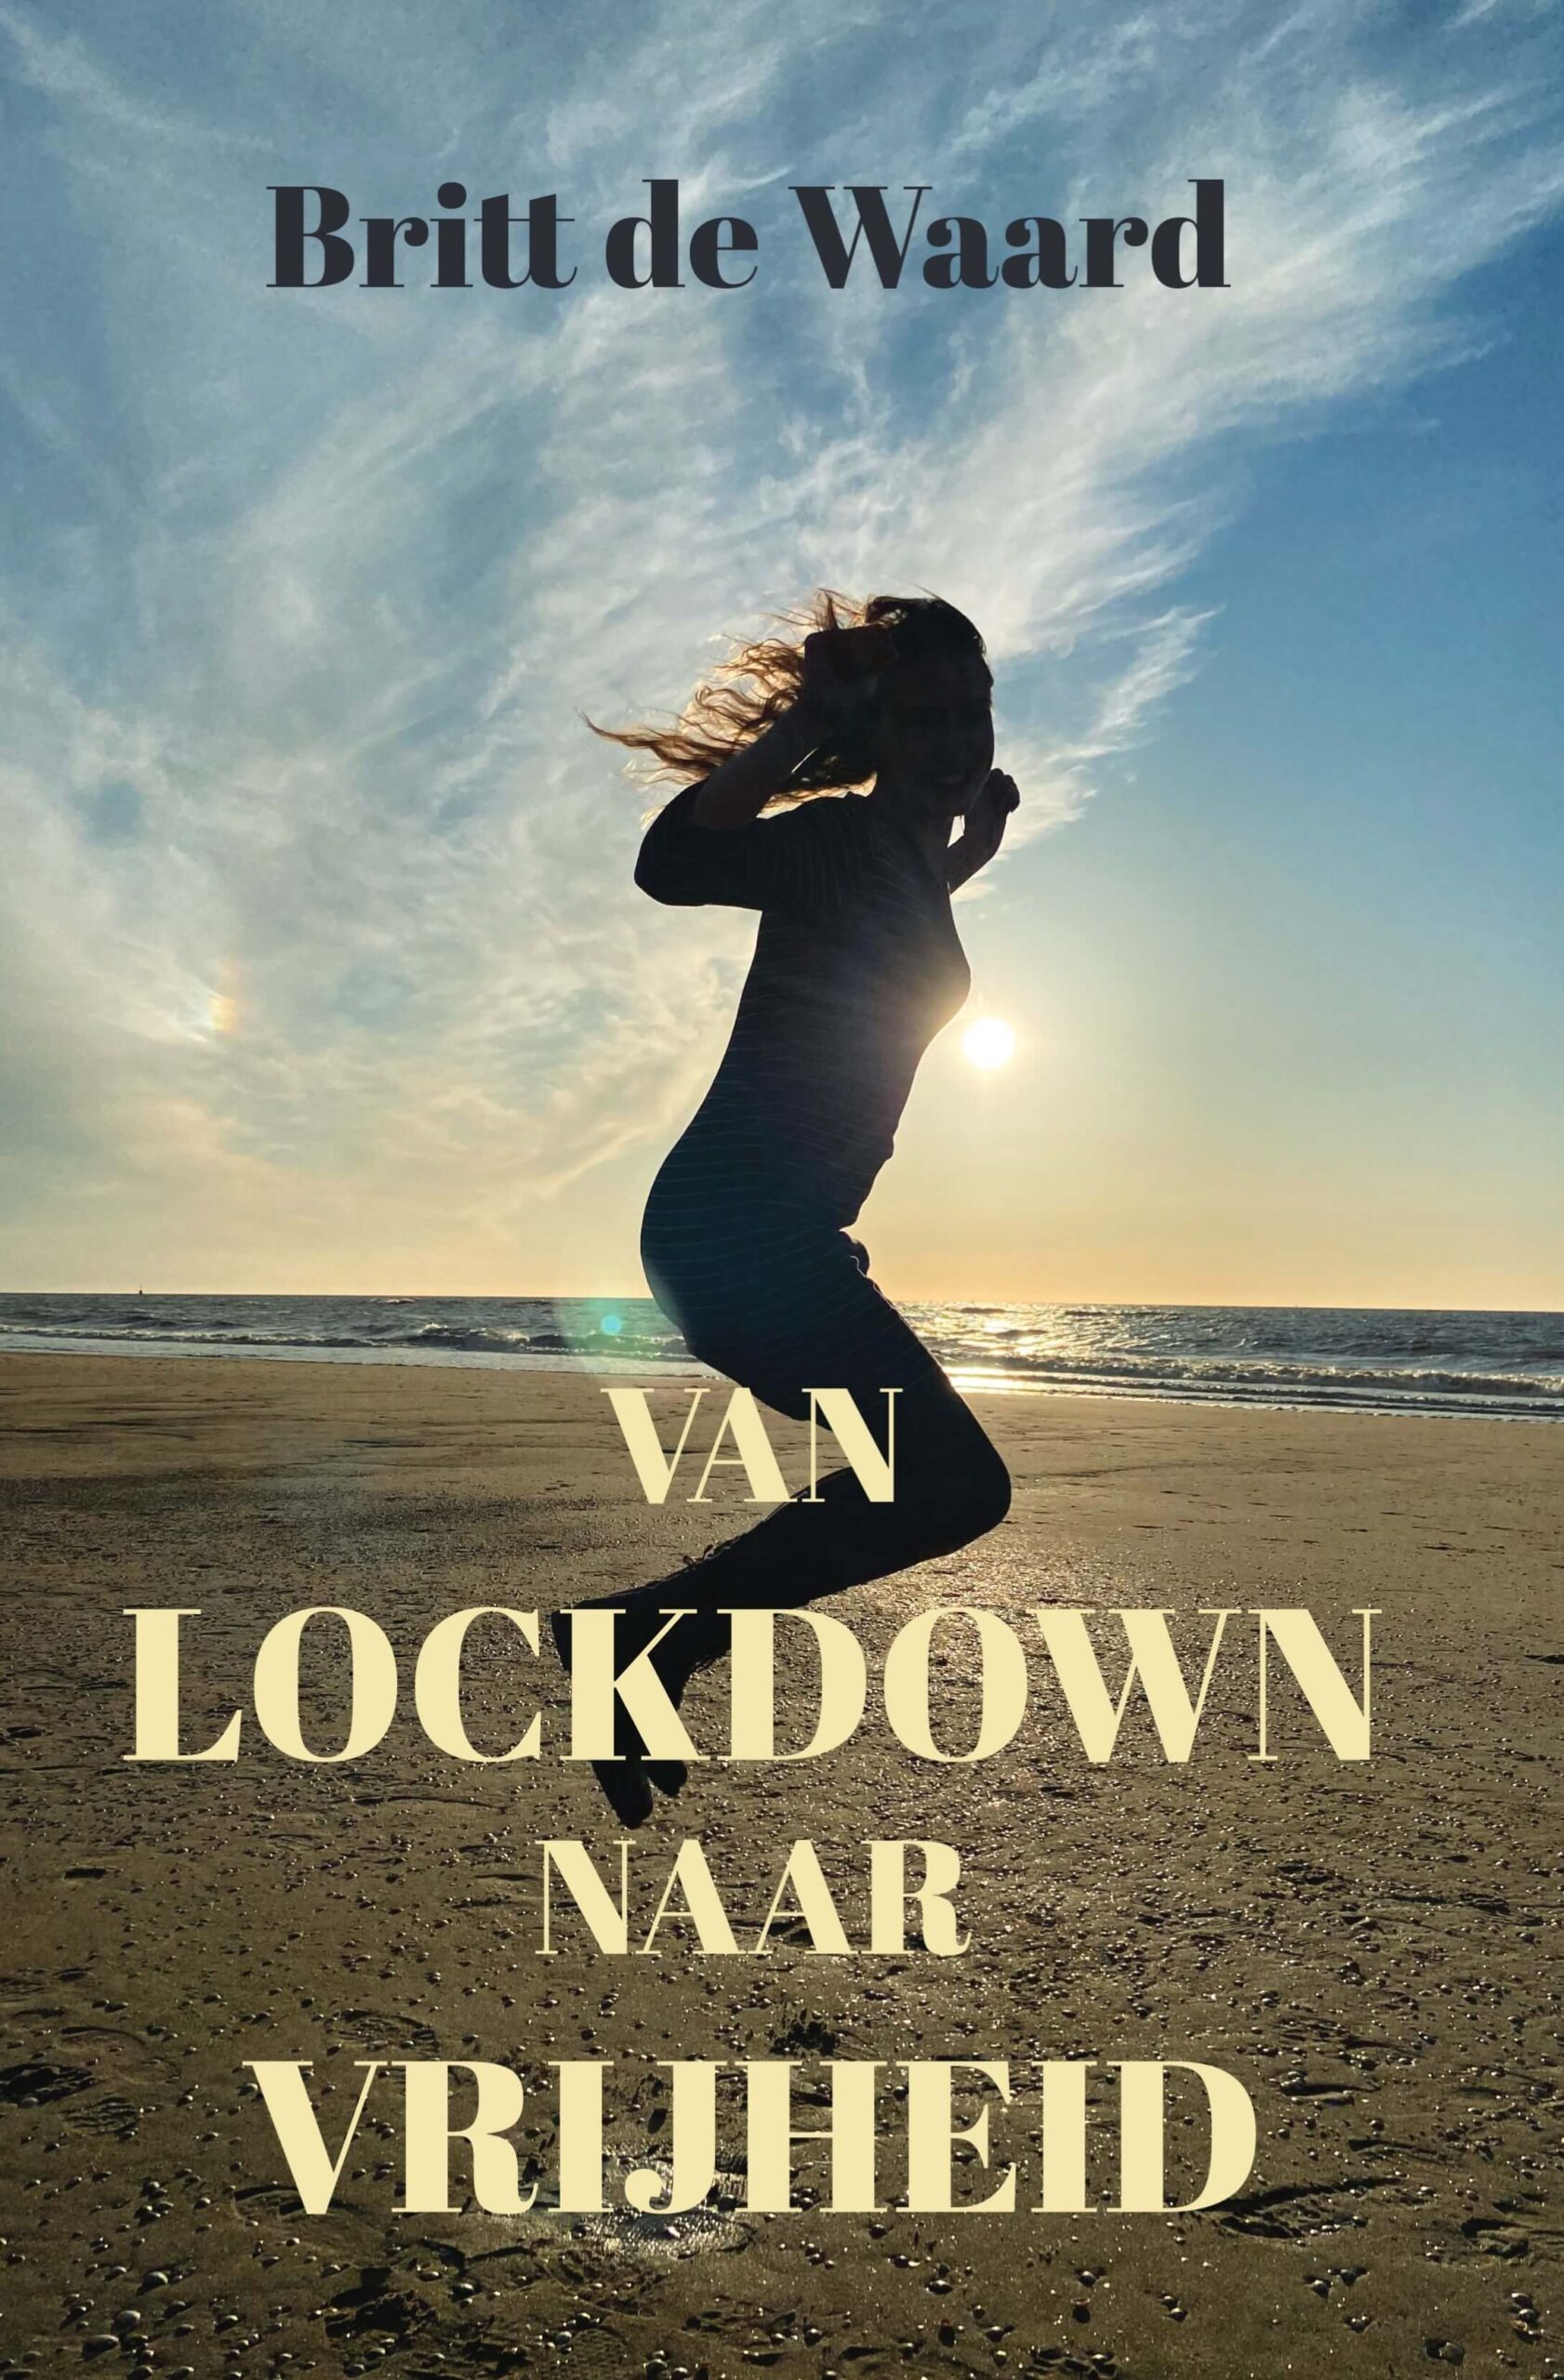 Cover van het boek "van lockdown naar vrijheiud" van Britt de Waard